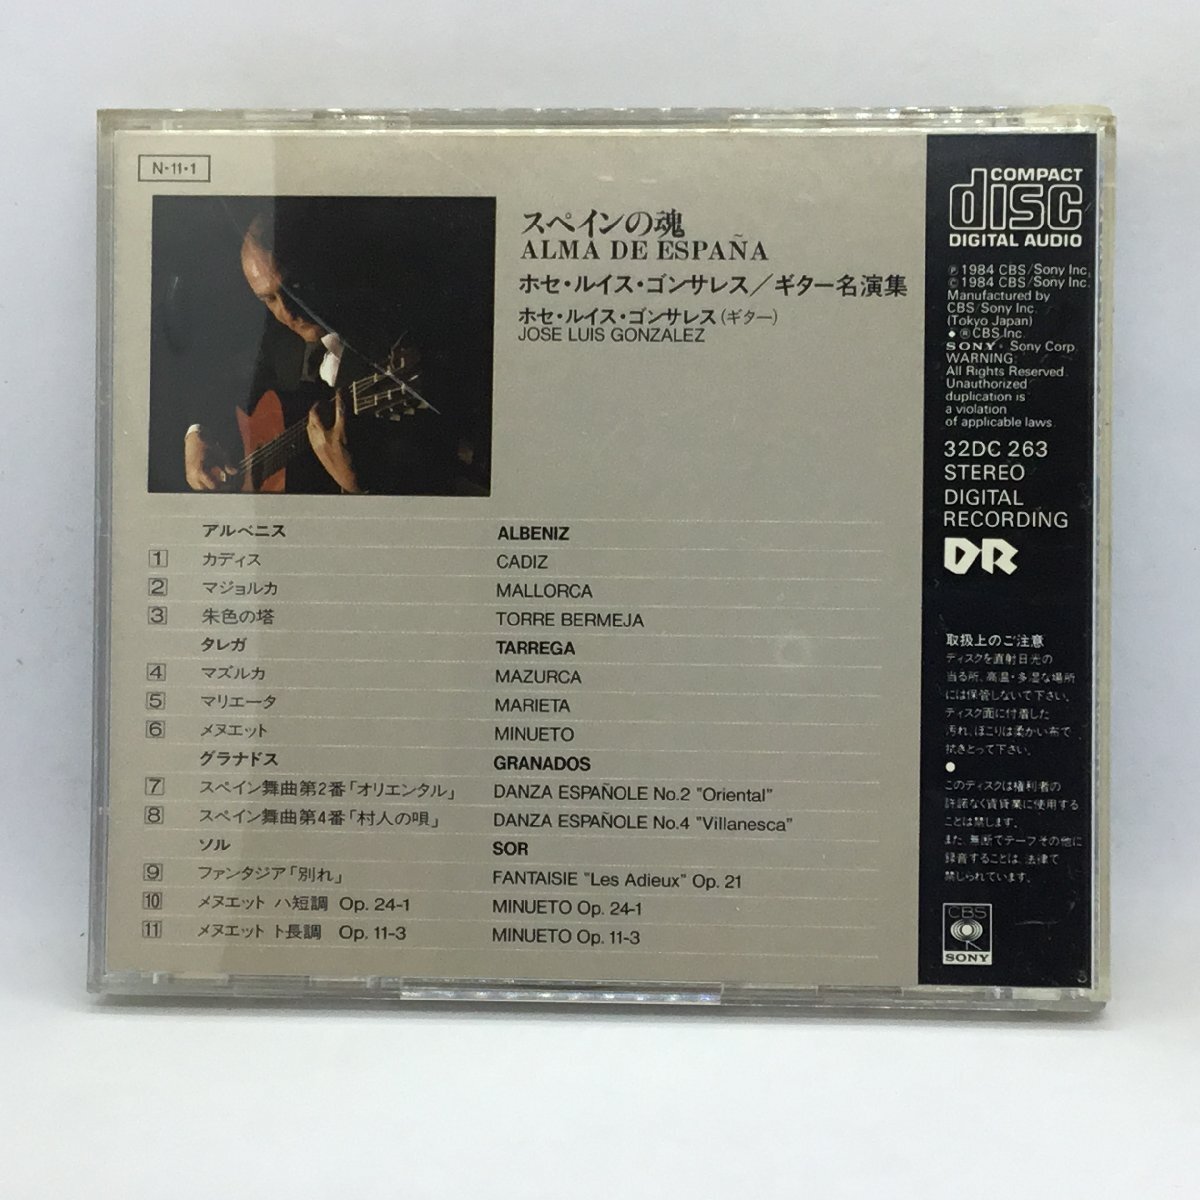 ソニー初期盤 旧規格 オリジナルケース ◇ ゴンザレス / スペインの魂 (CD) 32DC263_画像2